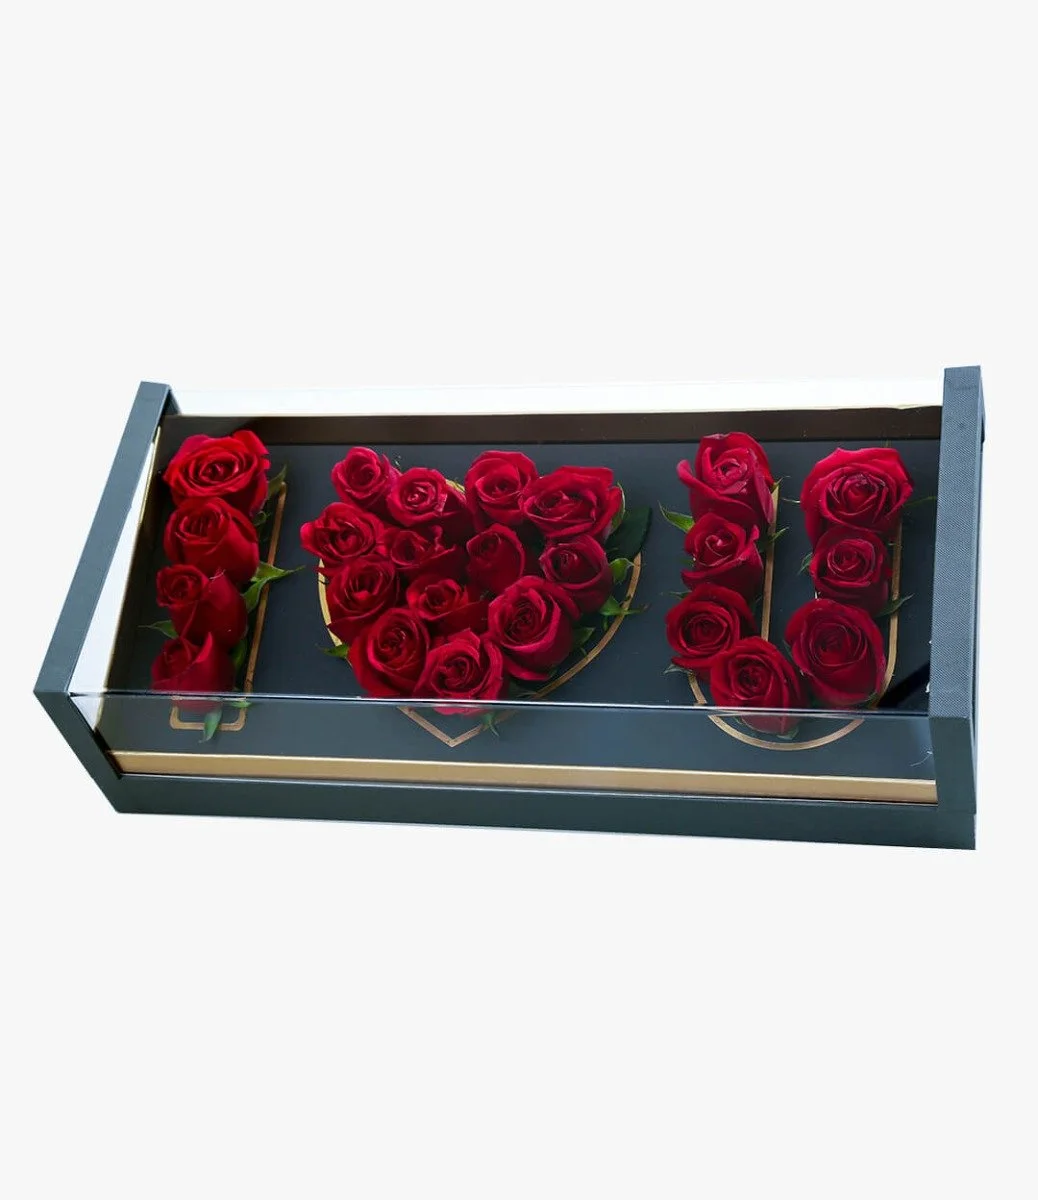 I Love you Roses Arrangement